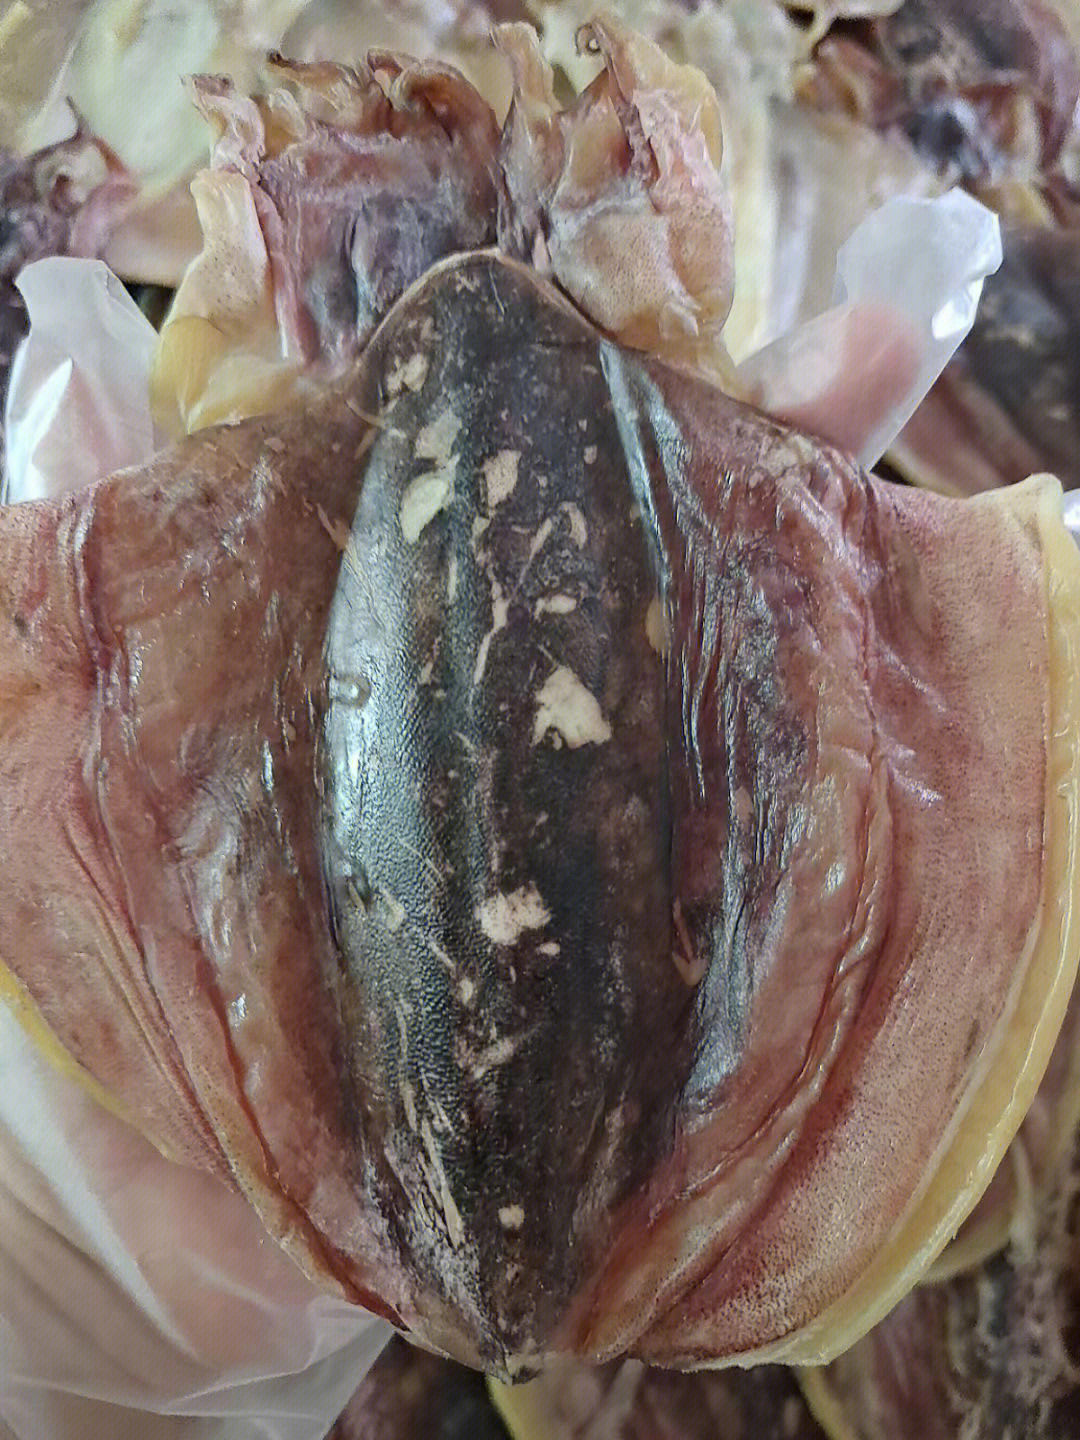 墨鱼,是不可多得的美味海鲜之一,又称乌贼,俗称墨鱼骨